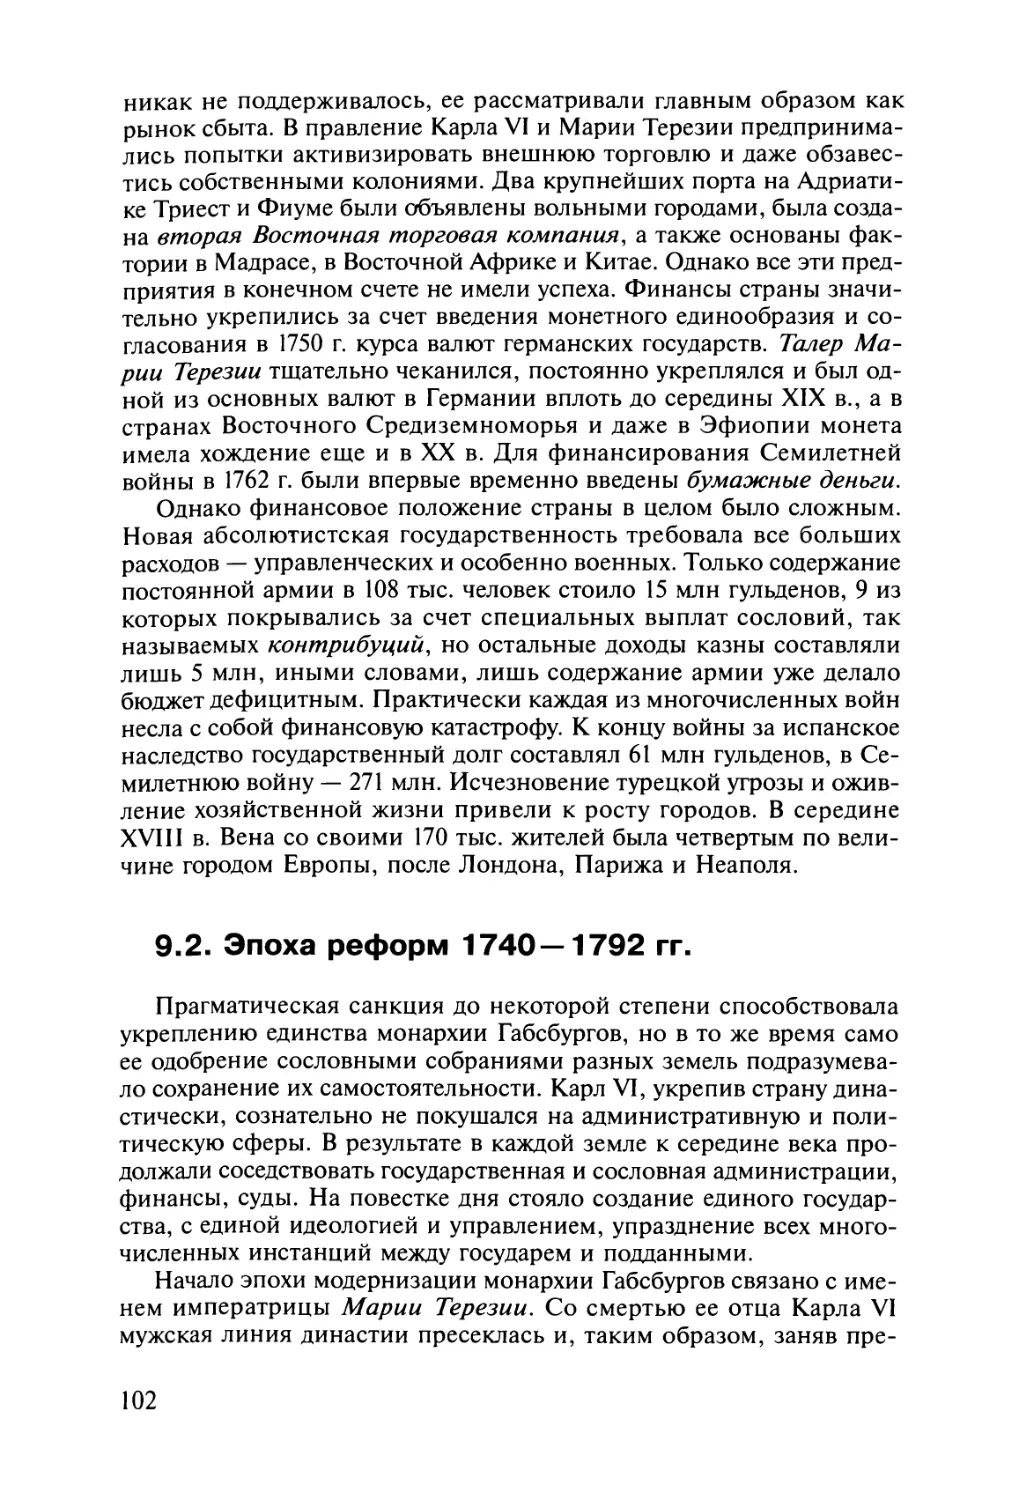 9.2. Эпоха реформ 1740— 1792 гг.